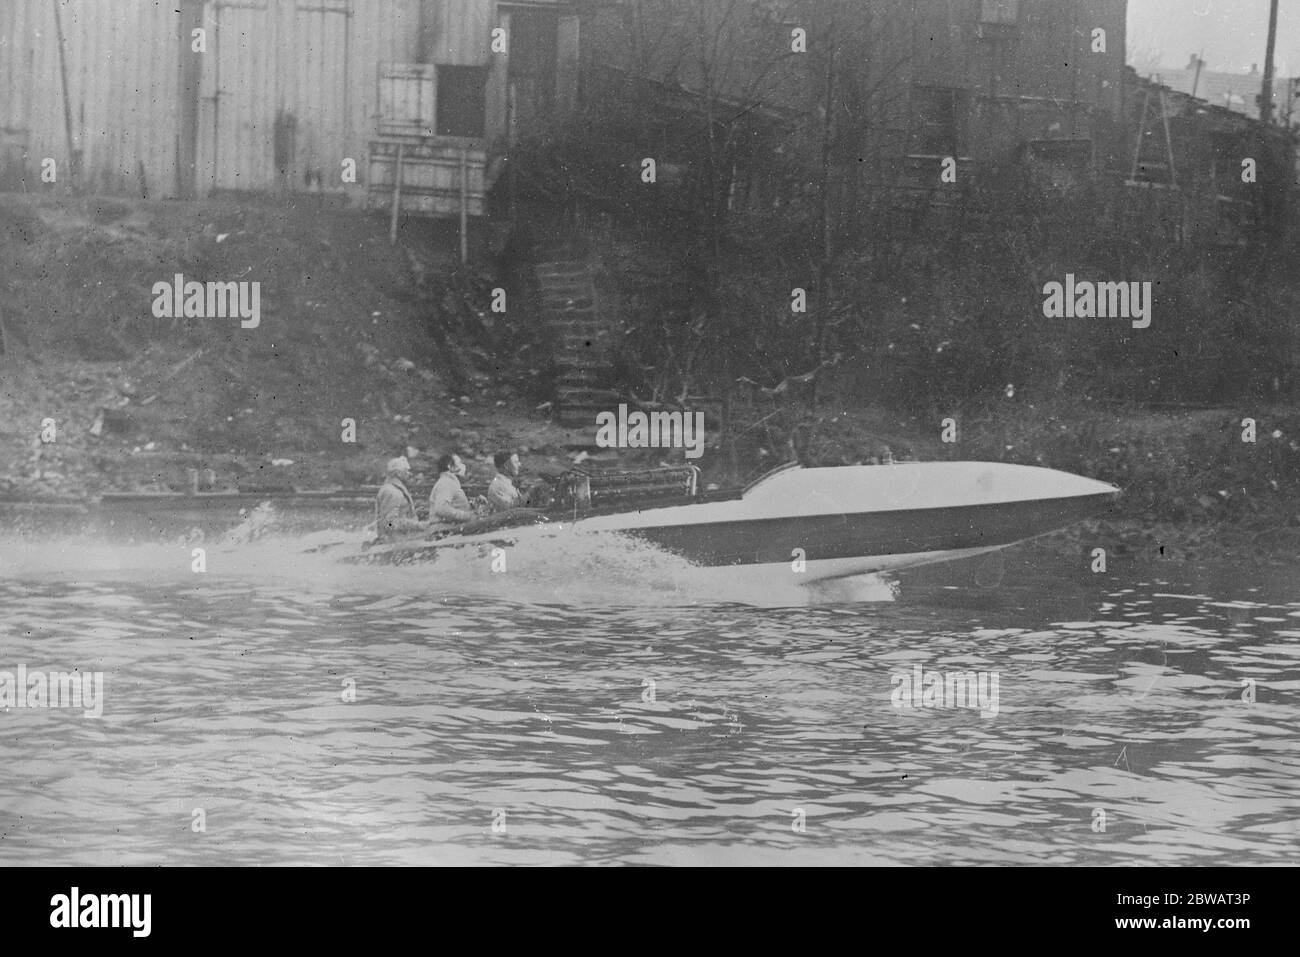 74 miles par heure sur l'eau le planeur français d'eau ' Despujols ' photographié pendant ses essais quand elle a réalisé une vitesse de 120 kilomètres ( 74 MPH ) une heure 25 Mars 1920 Banque D'Images